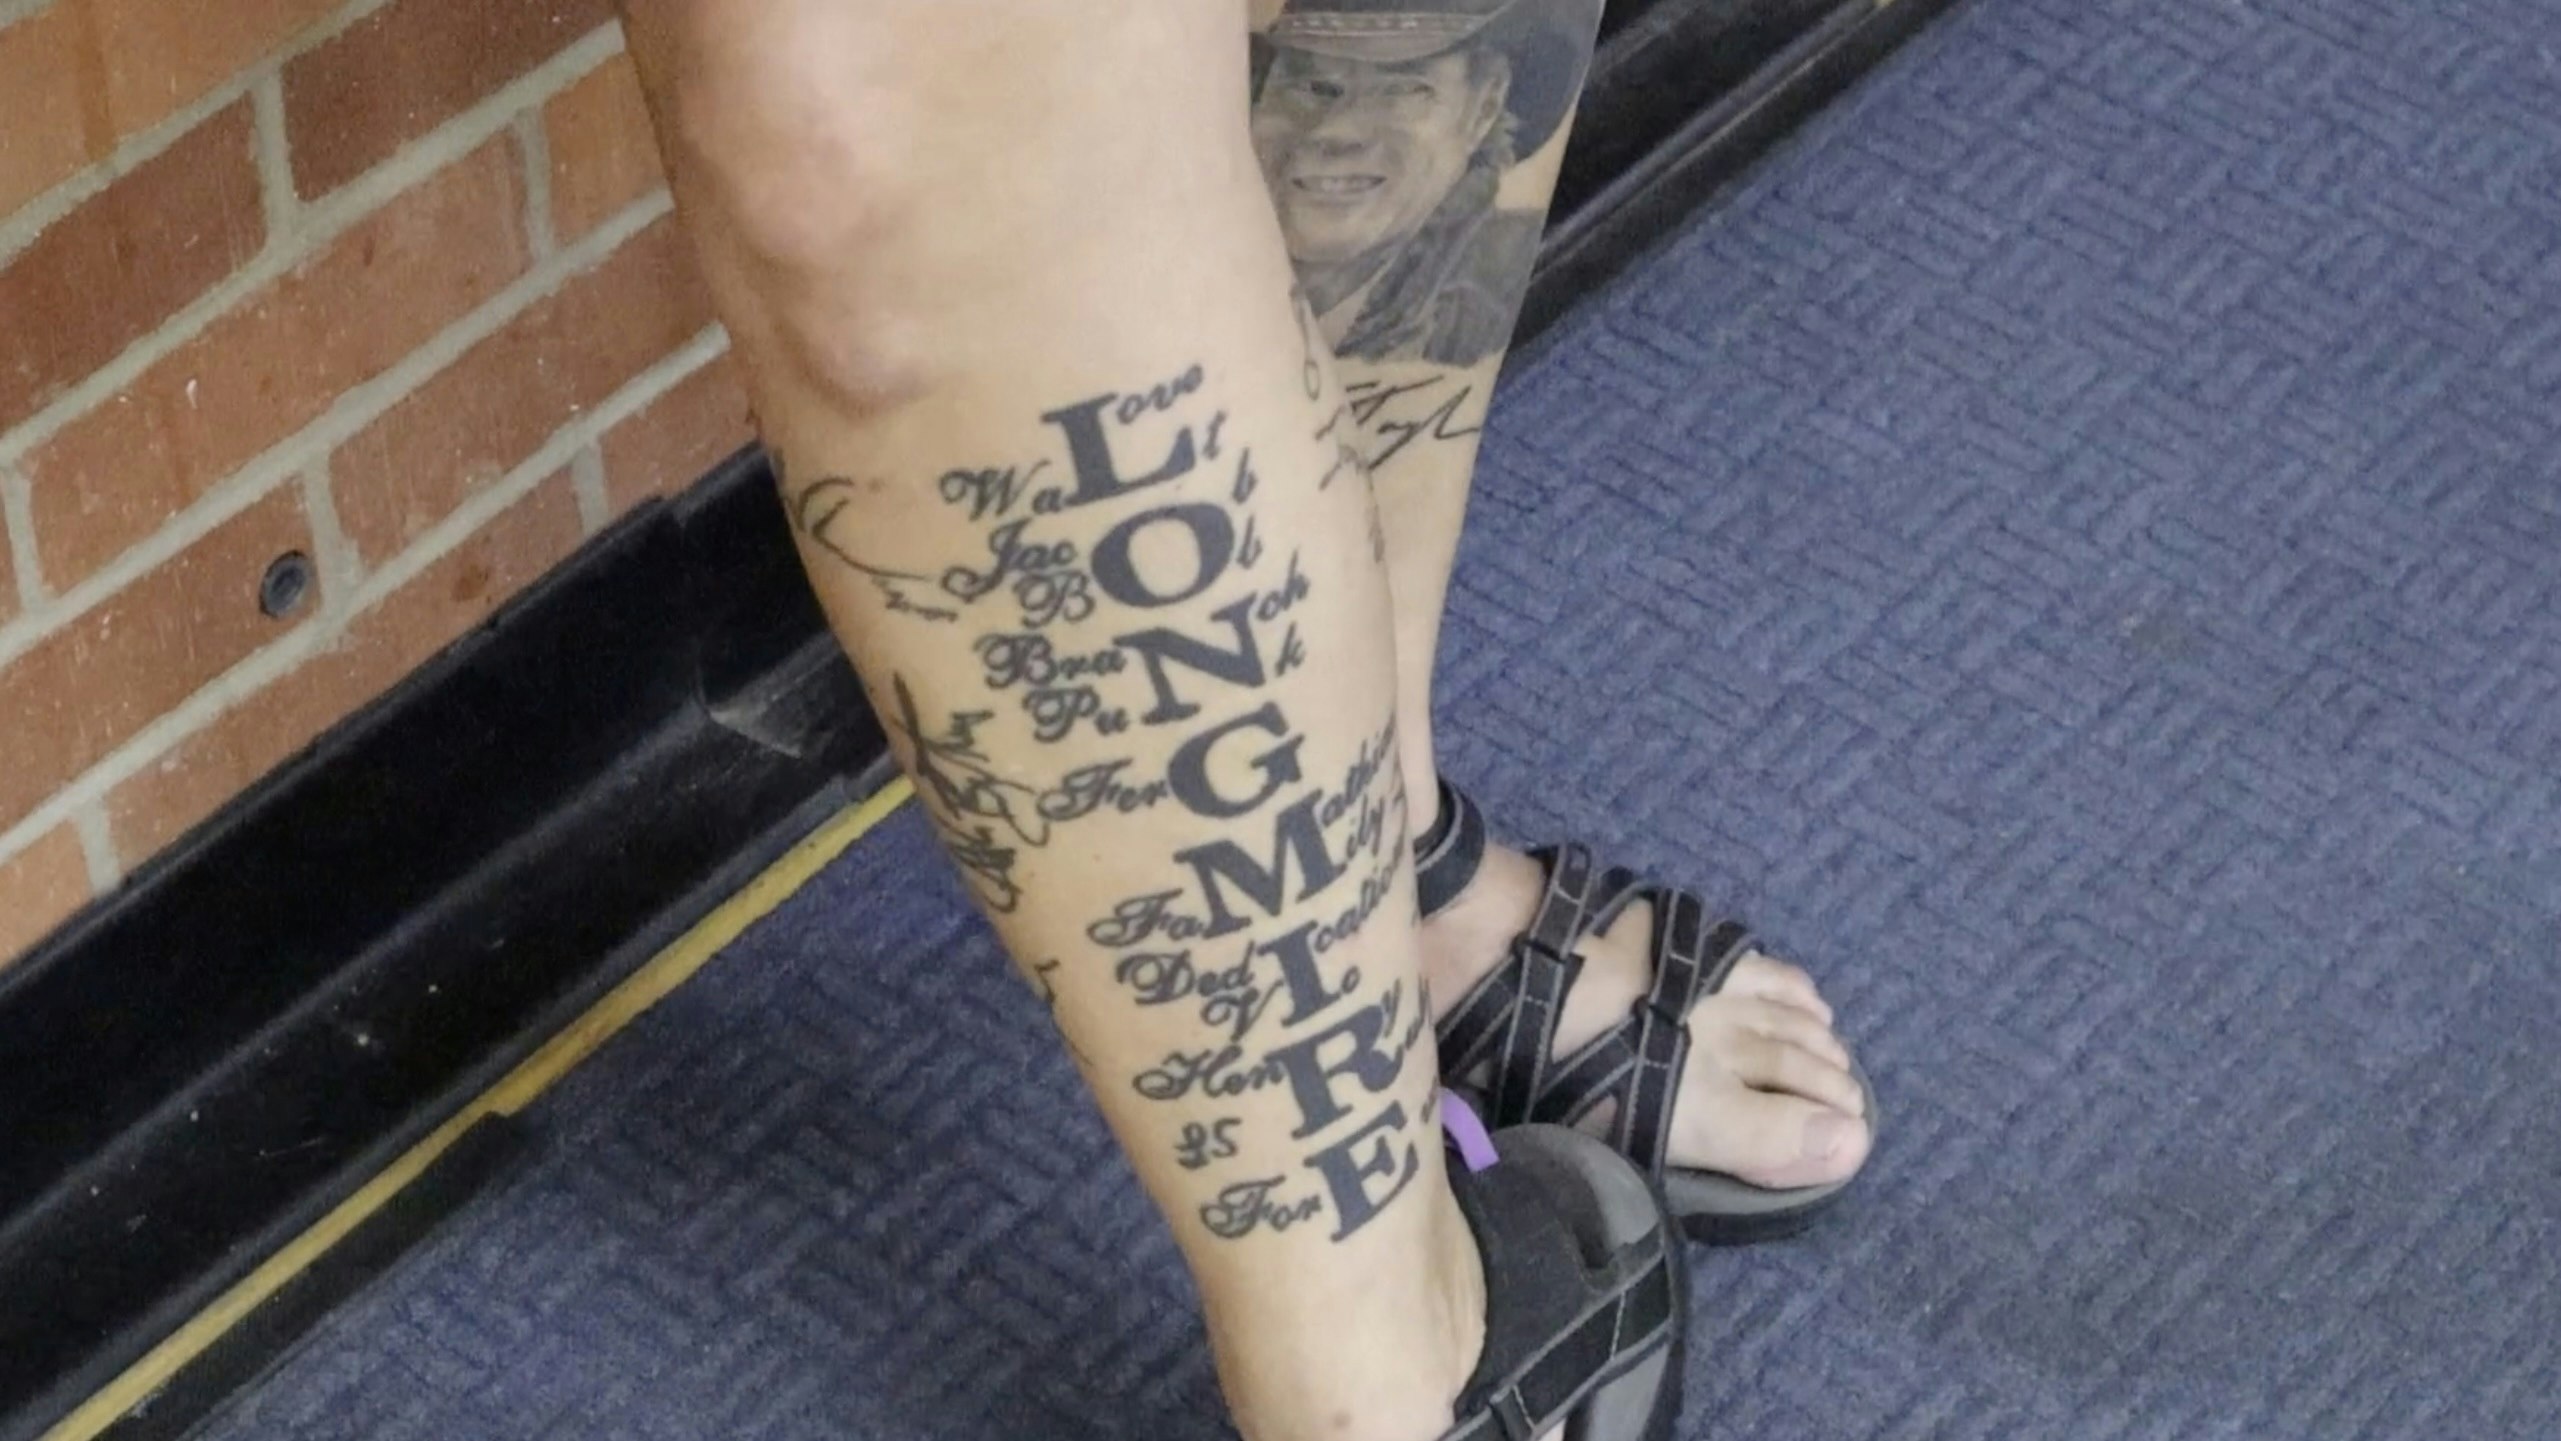 A Longmire fan shows off her Longmire-inspired tattoos.